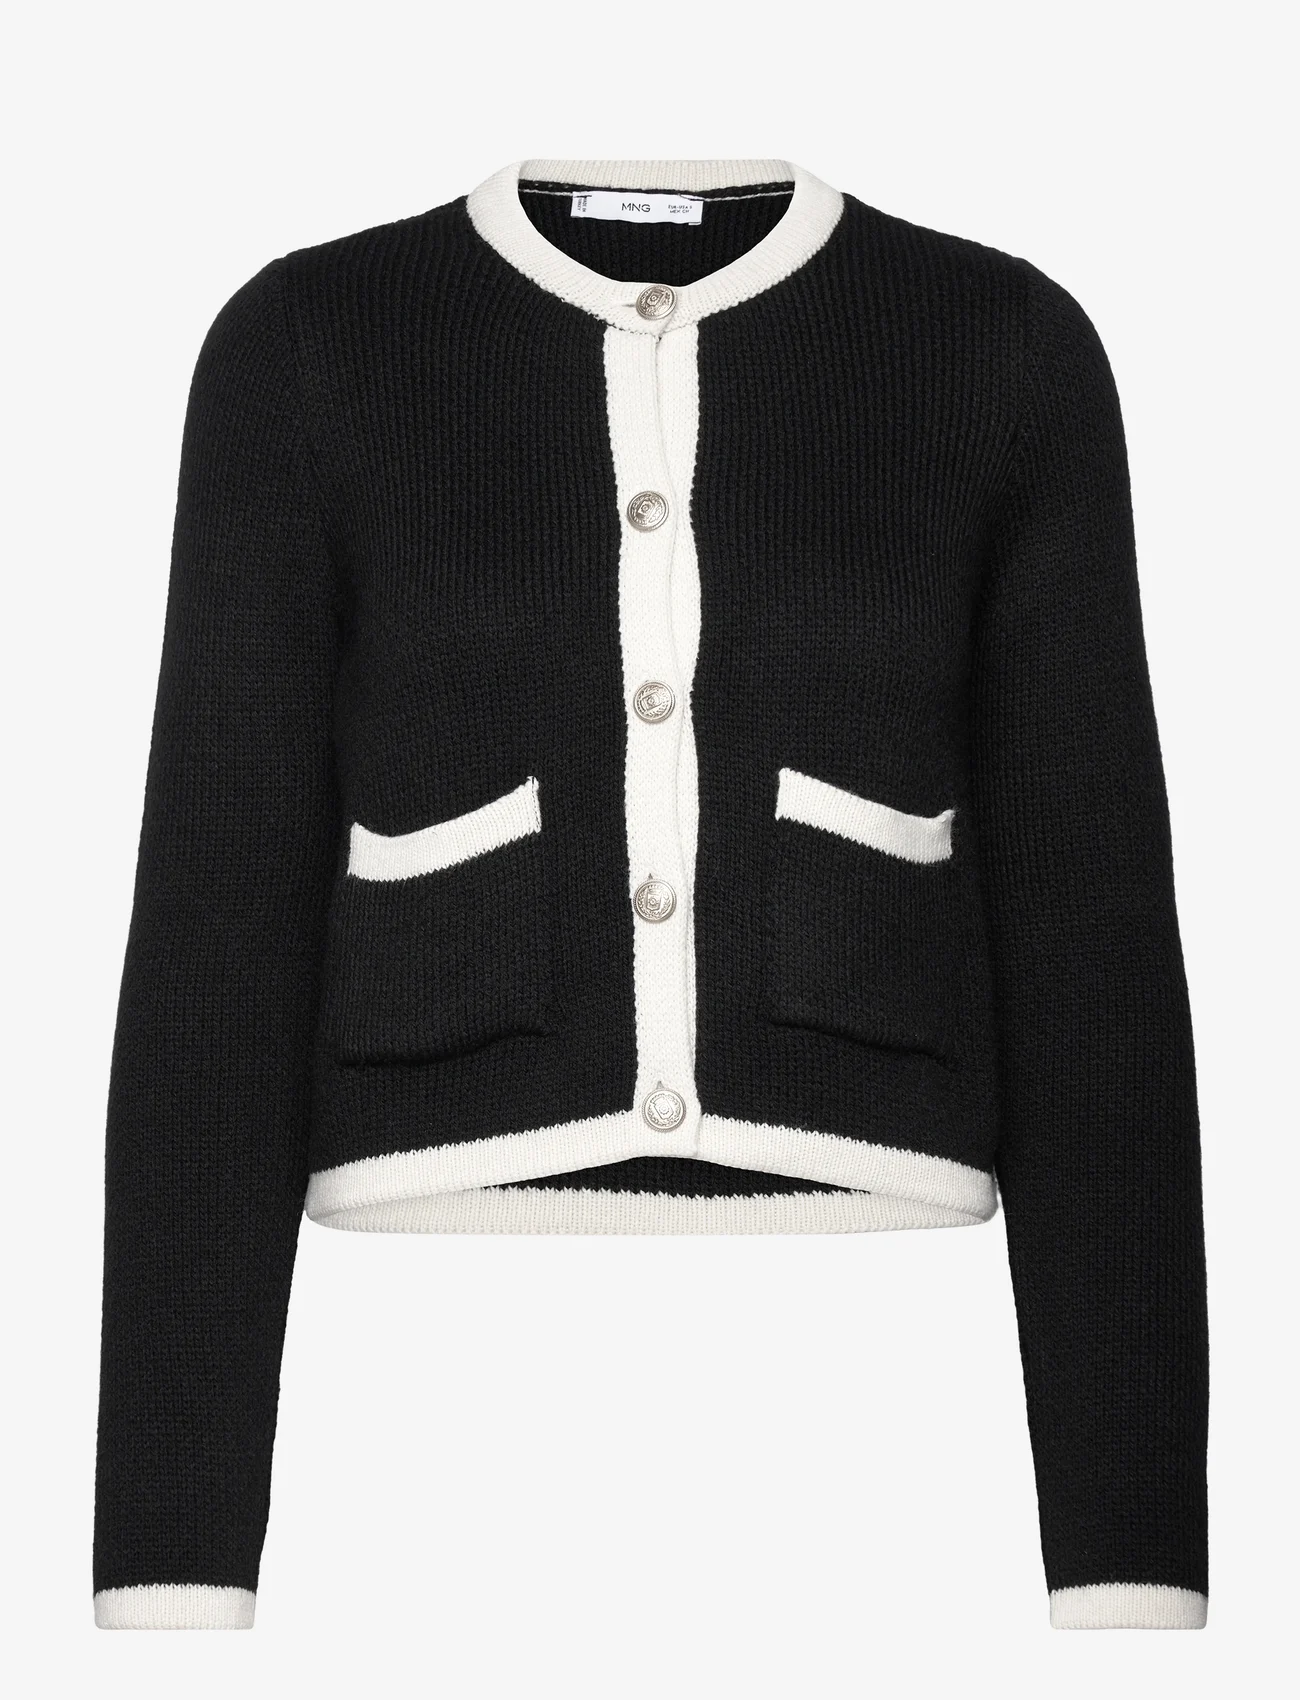 Mango - Knitted buttoned jacket - neuletakit - black - 0